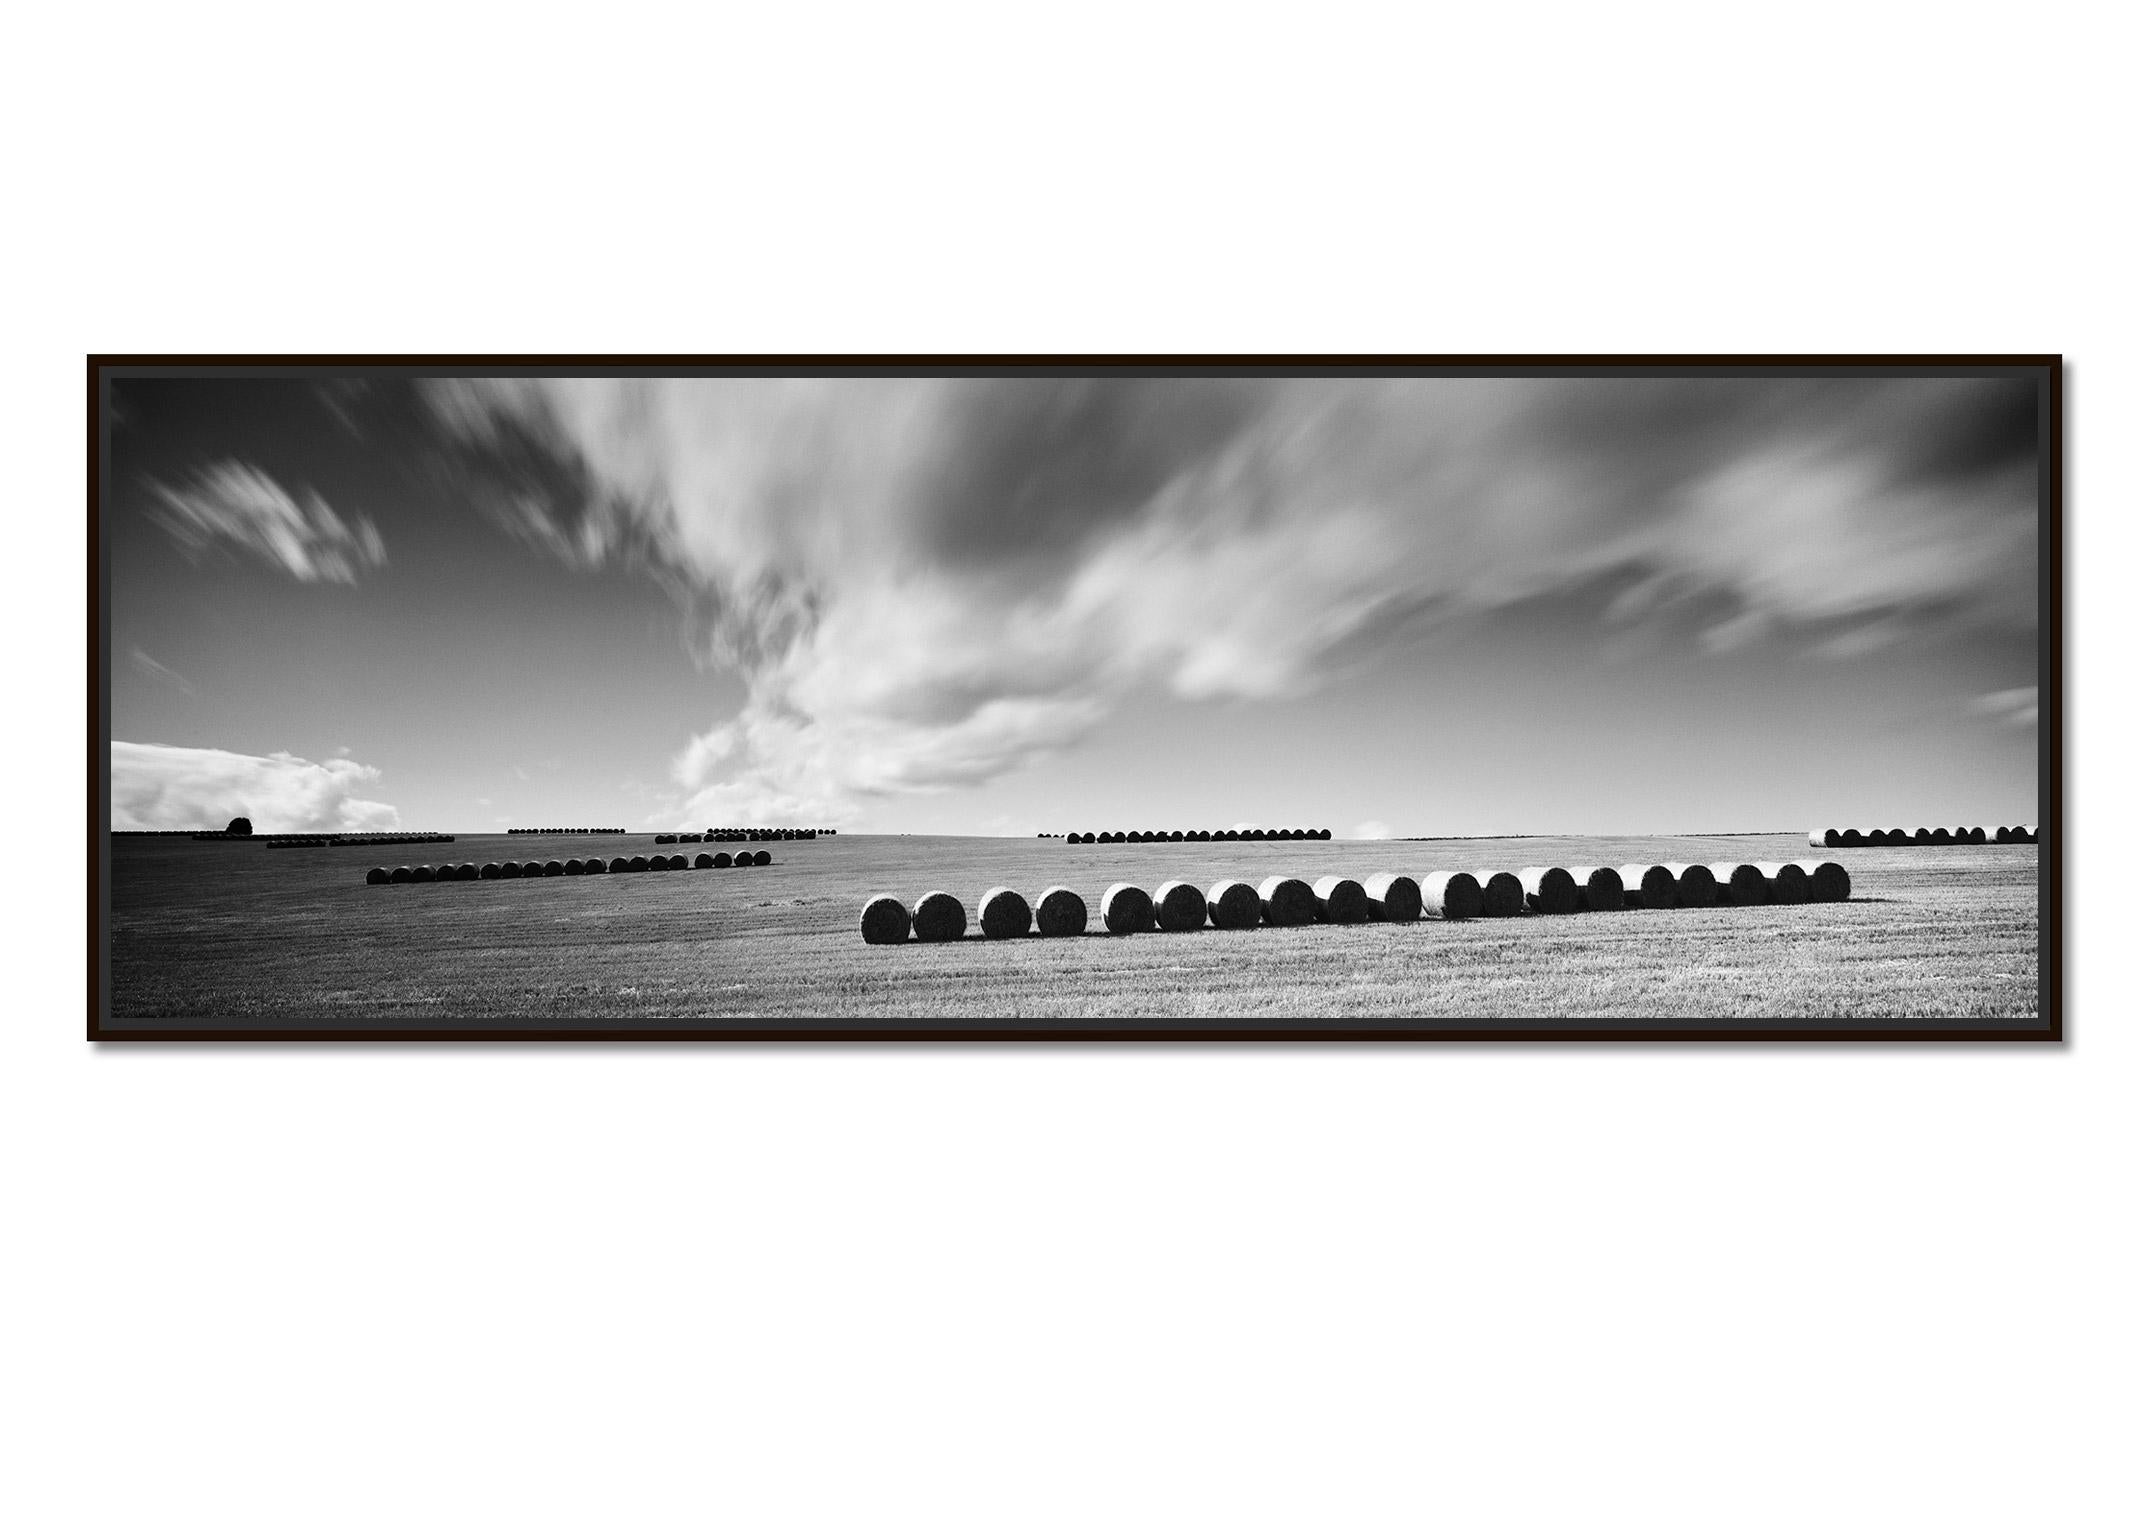 M. Monk Panorama, terres agricoles, bottes de paille, photo de paysage en noir et blanc. - Photograph de Gerald Berghammer